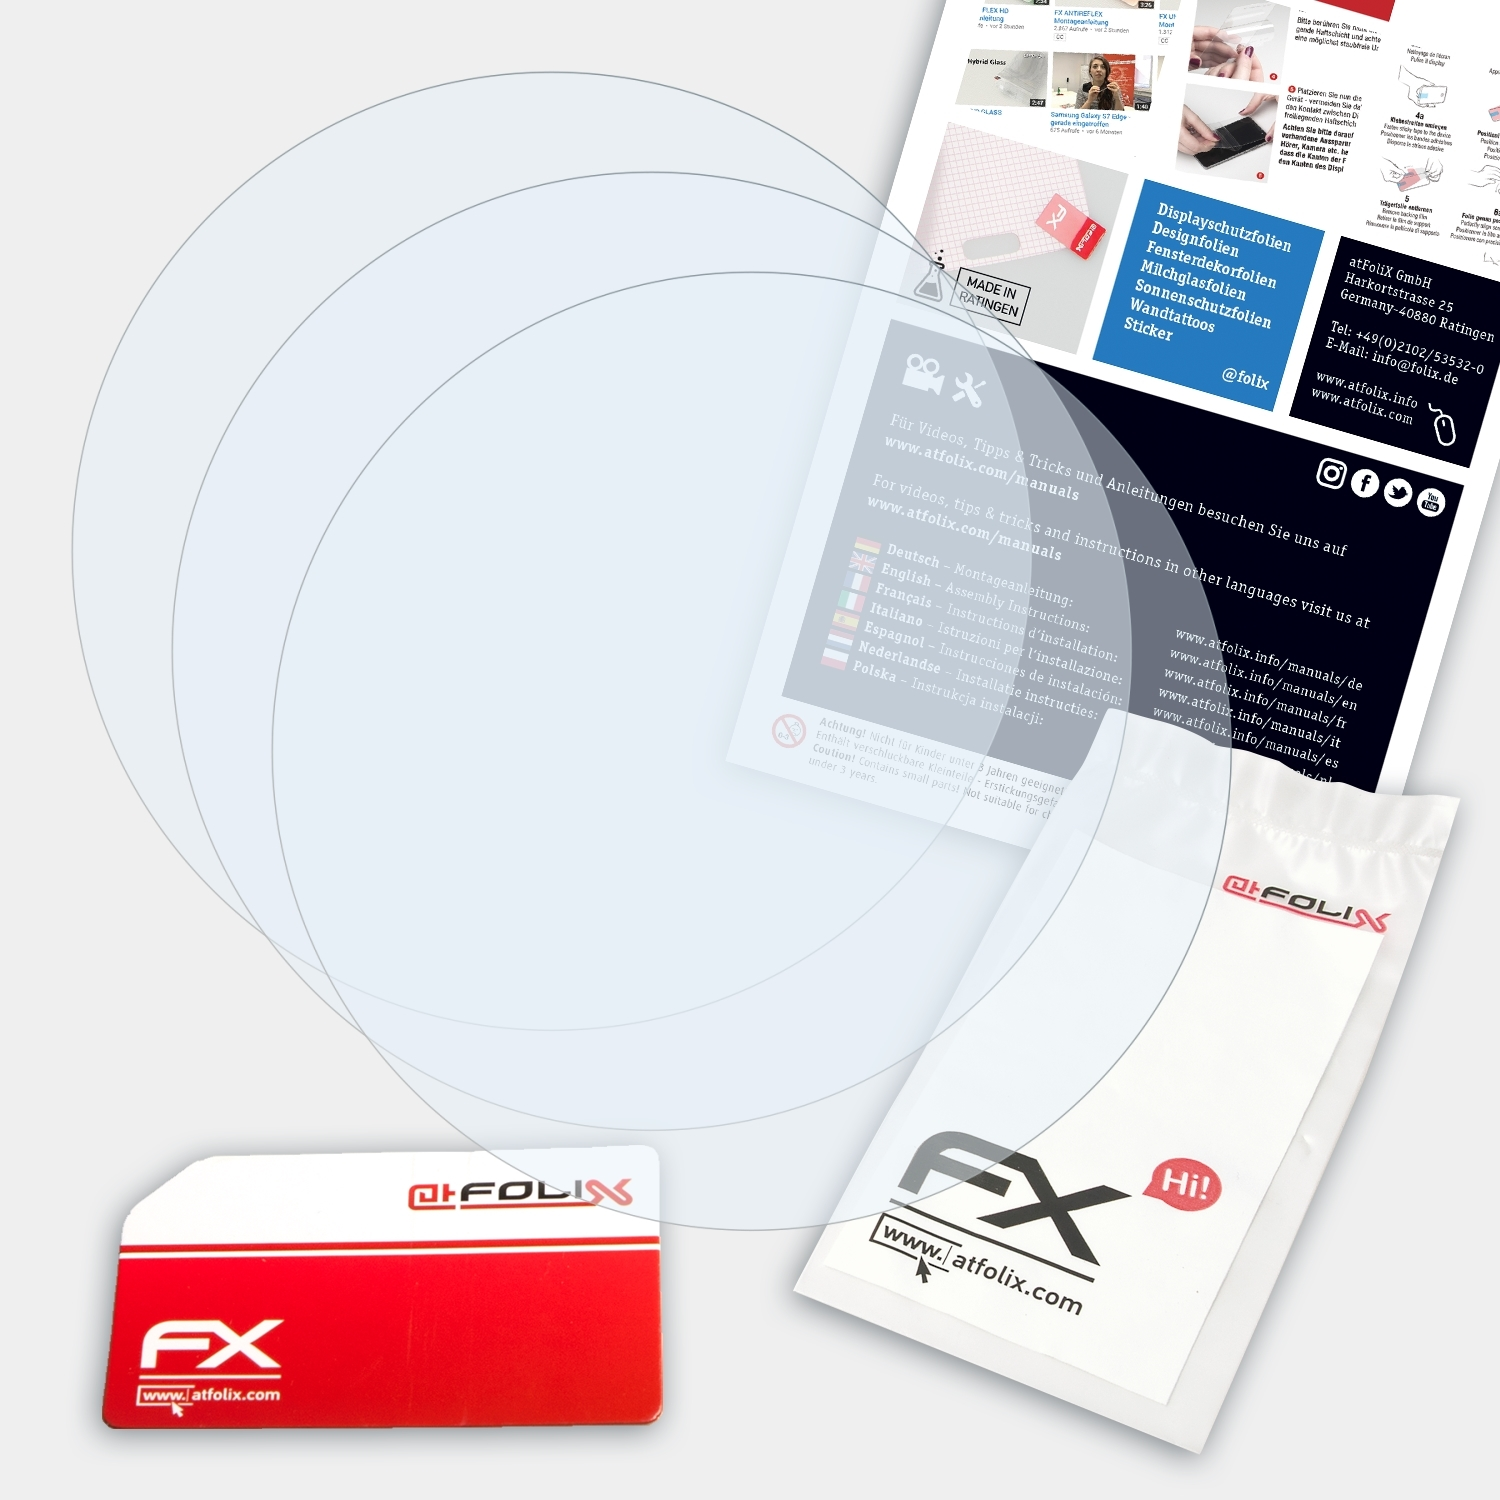 ATFOLIX 3x FX-Clear Displayschutz(für Connected 45) TAG Heuer Modular